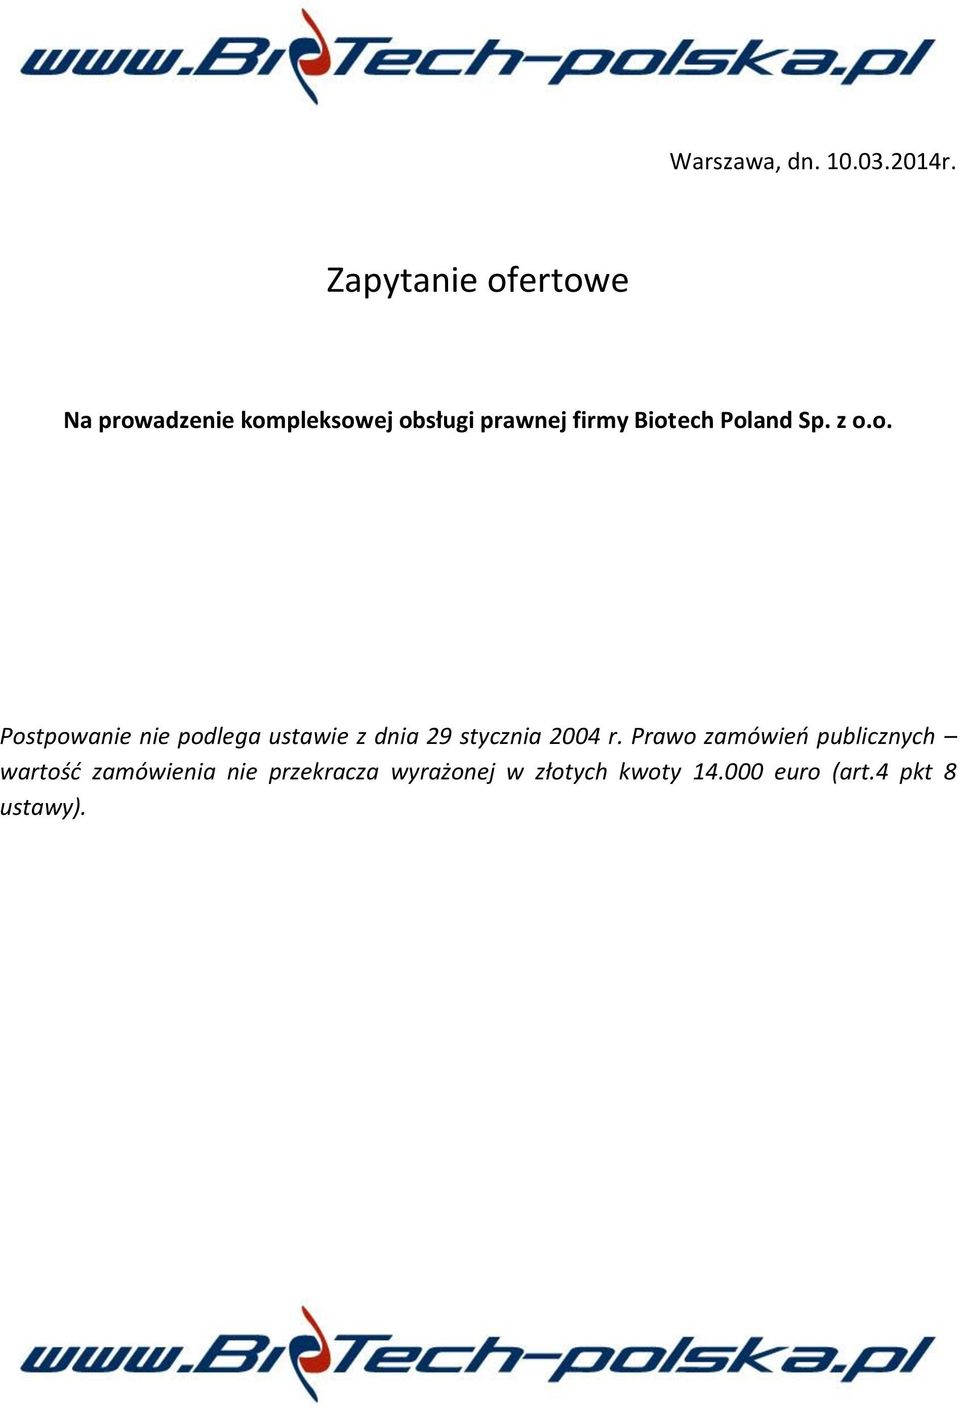 Biotech Poland Sp. z o.o. Postpowanie nie podlega ustawie z dnia 29 stycznia 2004 r.